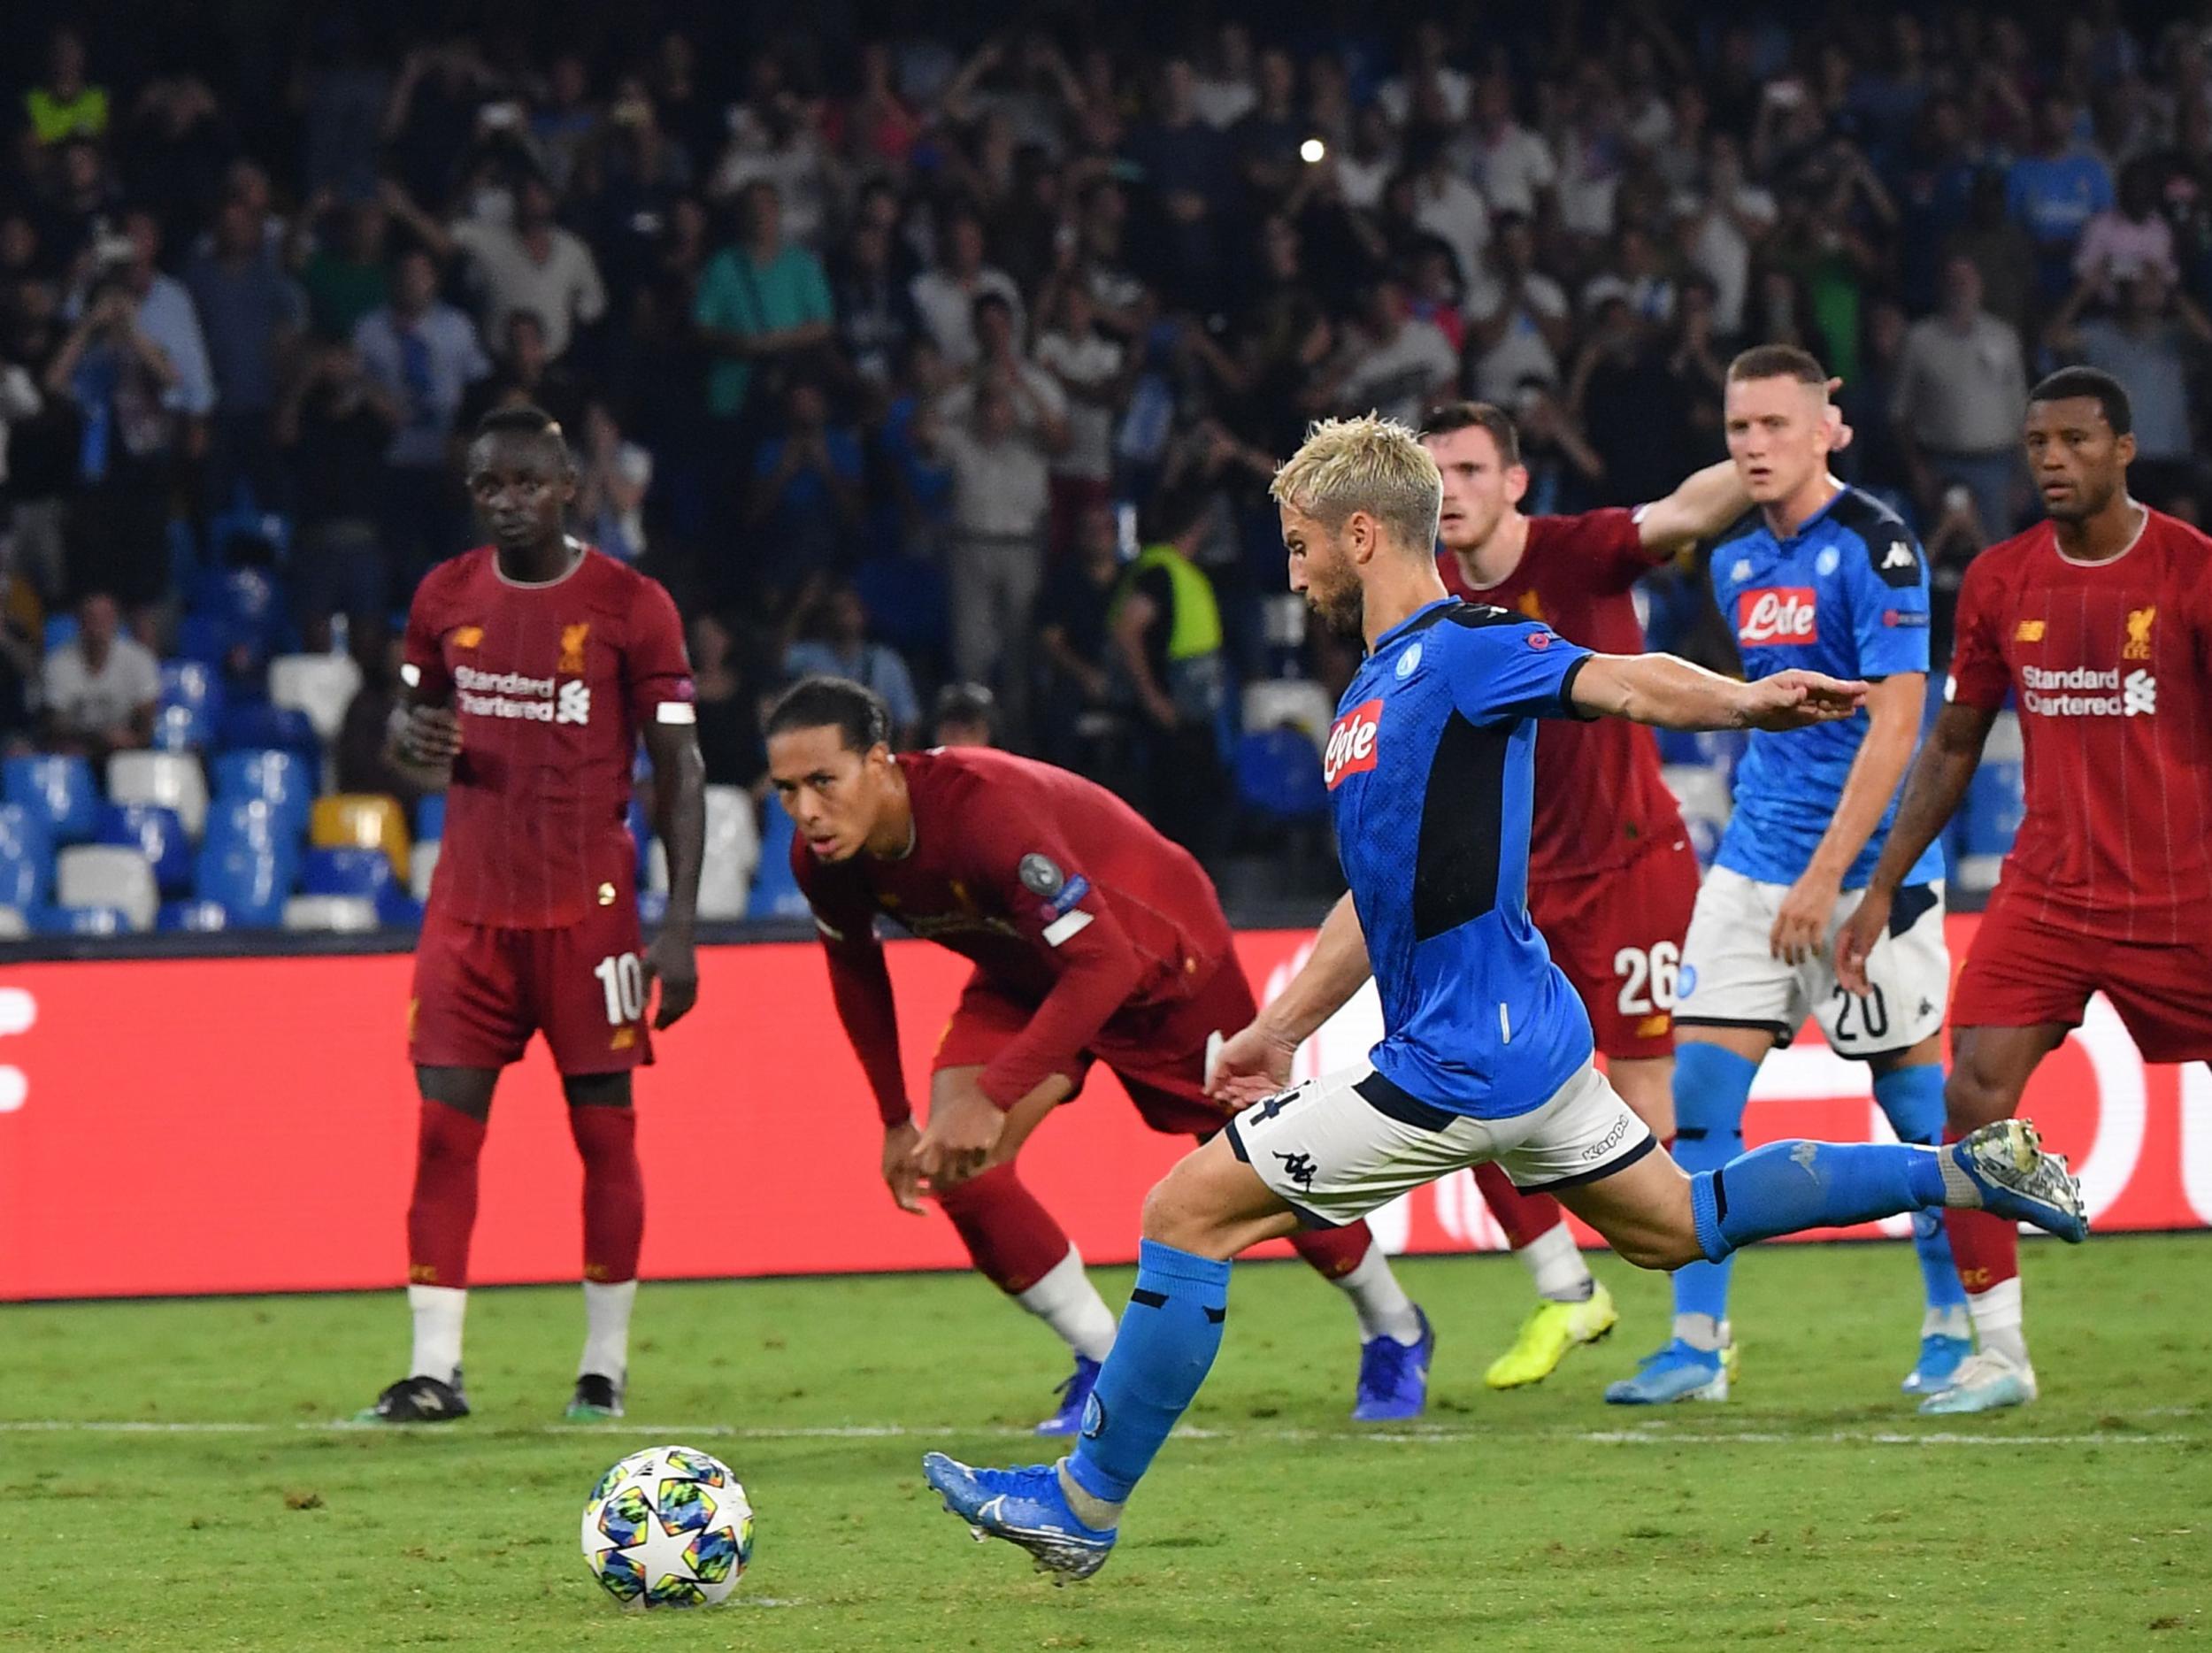 Napoli won a controversial penalty